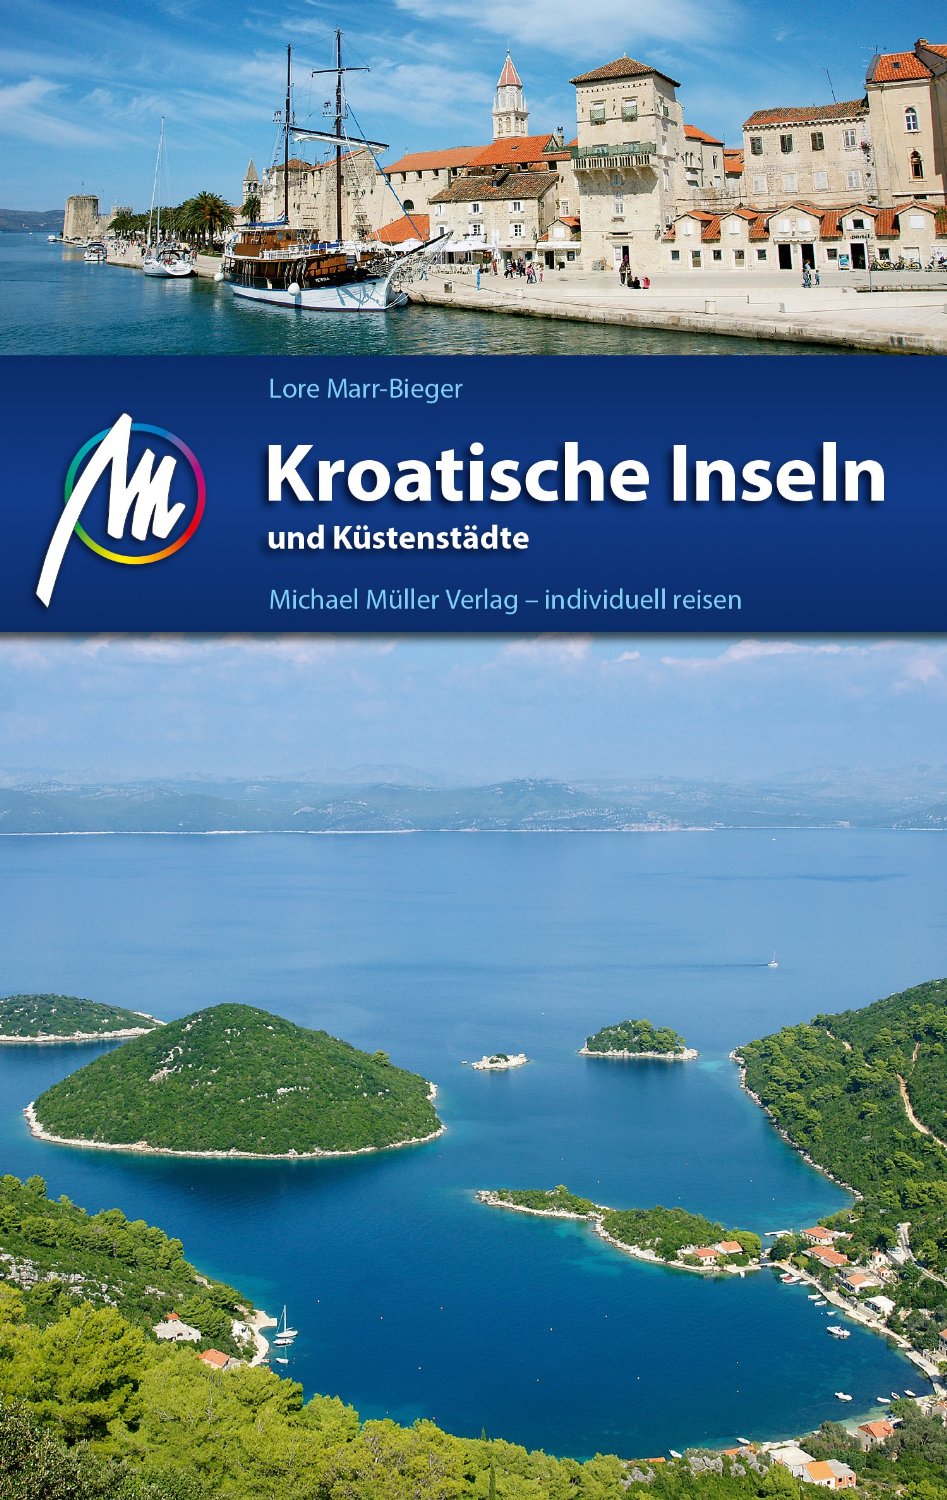 Kroatische Inseln und Küstenstädte - Michael Müller